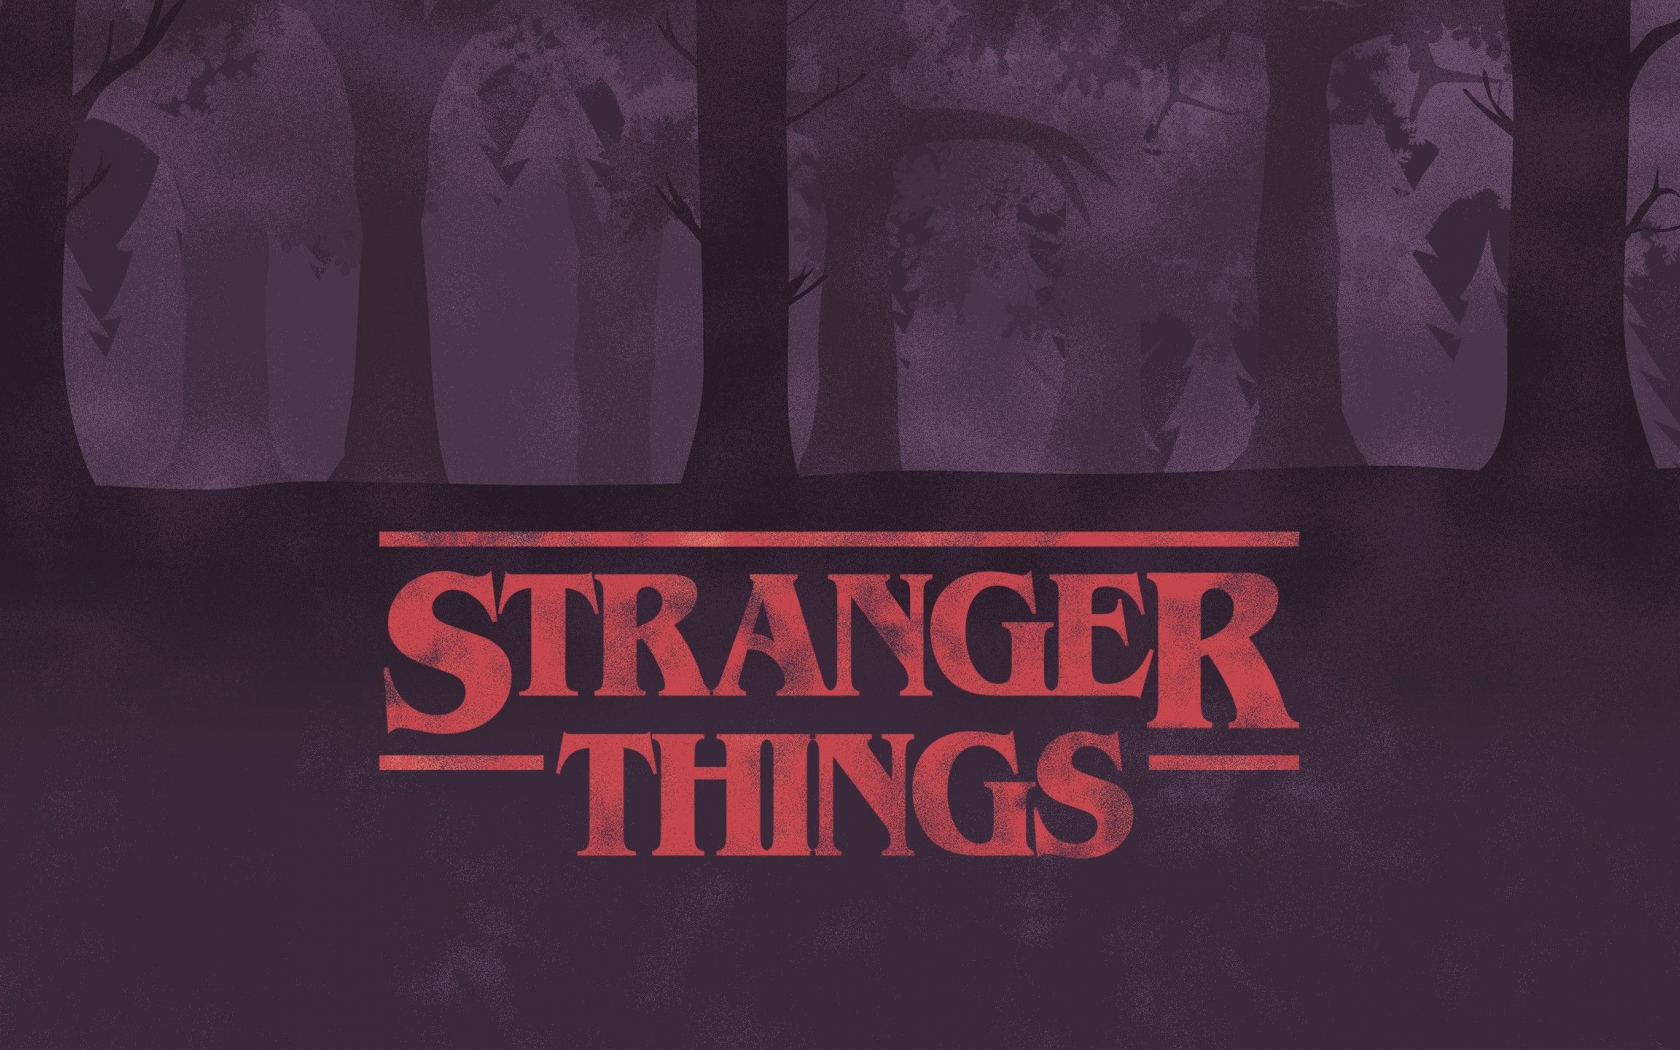 Free download Stranger Things Aesthetic Laptop Wallpaper Top